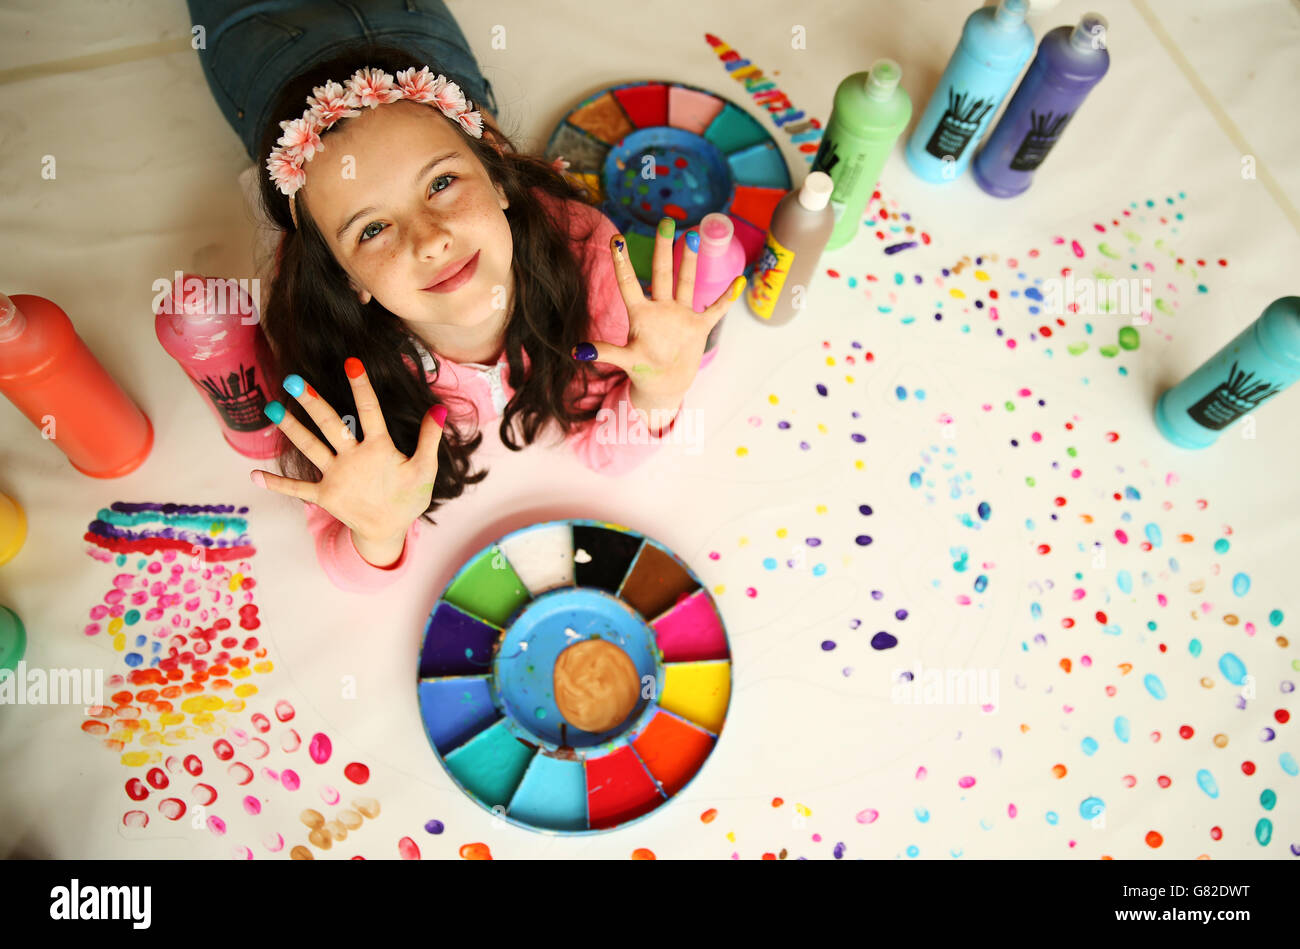 Niamh Fitzgerald, 10 anni, allievo della Catherine McAuley National School di Dublino, si pone per una foto dopo essere diventata una delle prime a collocare le sue impronte digitali su una grande opera d'arte che gli organizzatori sperano di incorporare le impronte digitali di oltre 500 bambini in Irlanda. Foto Stock